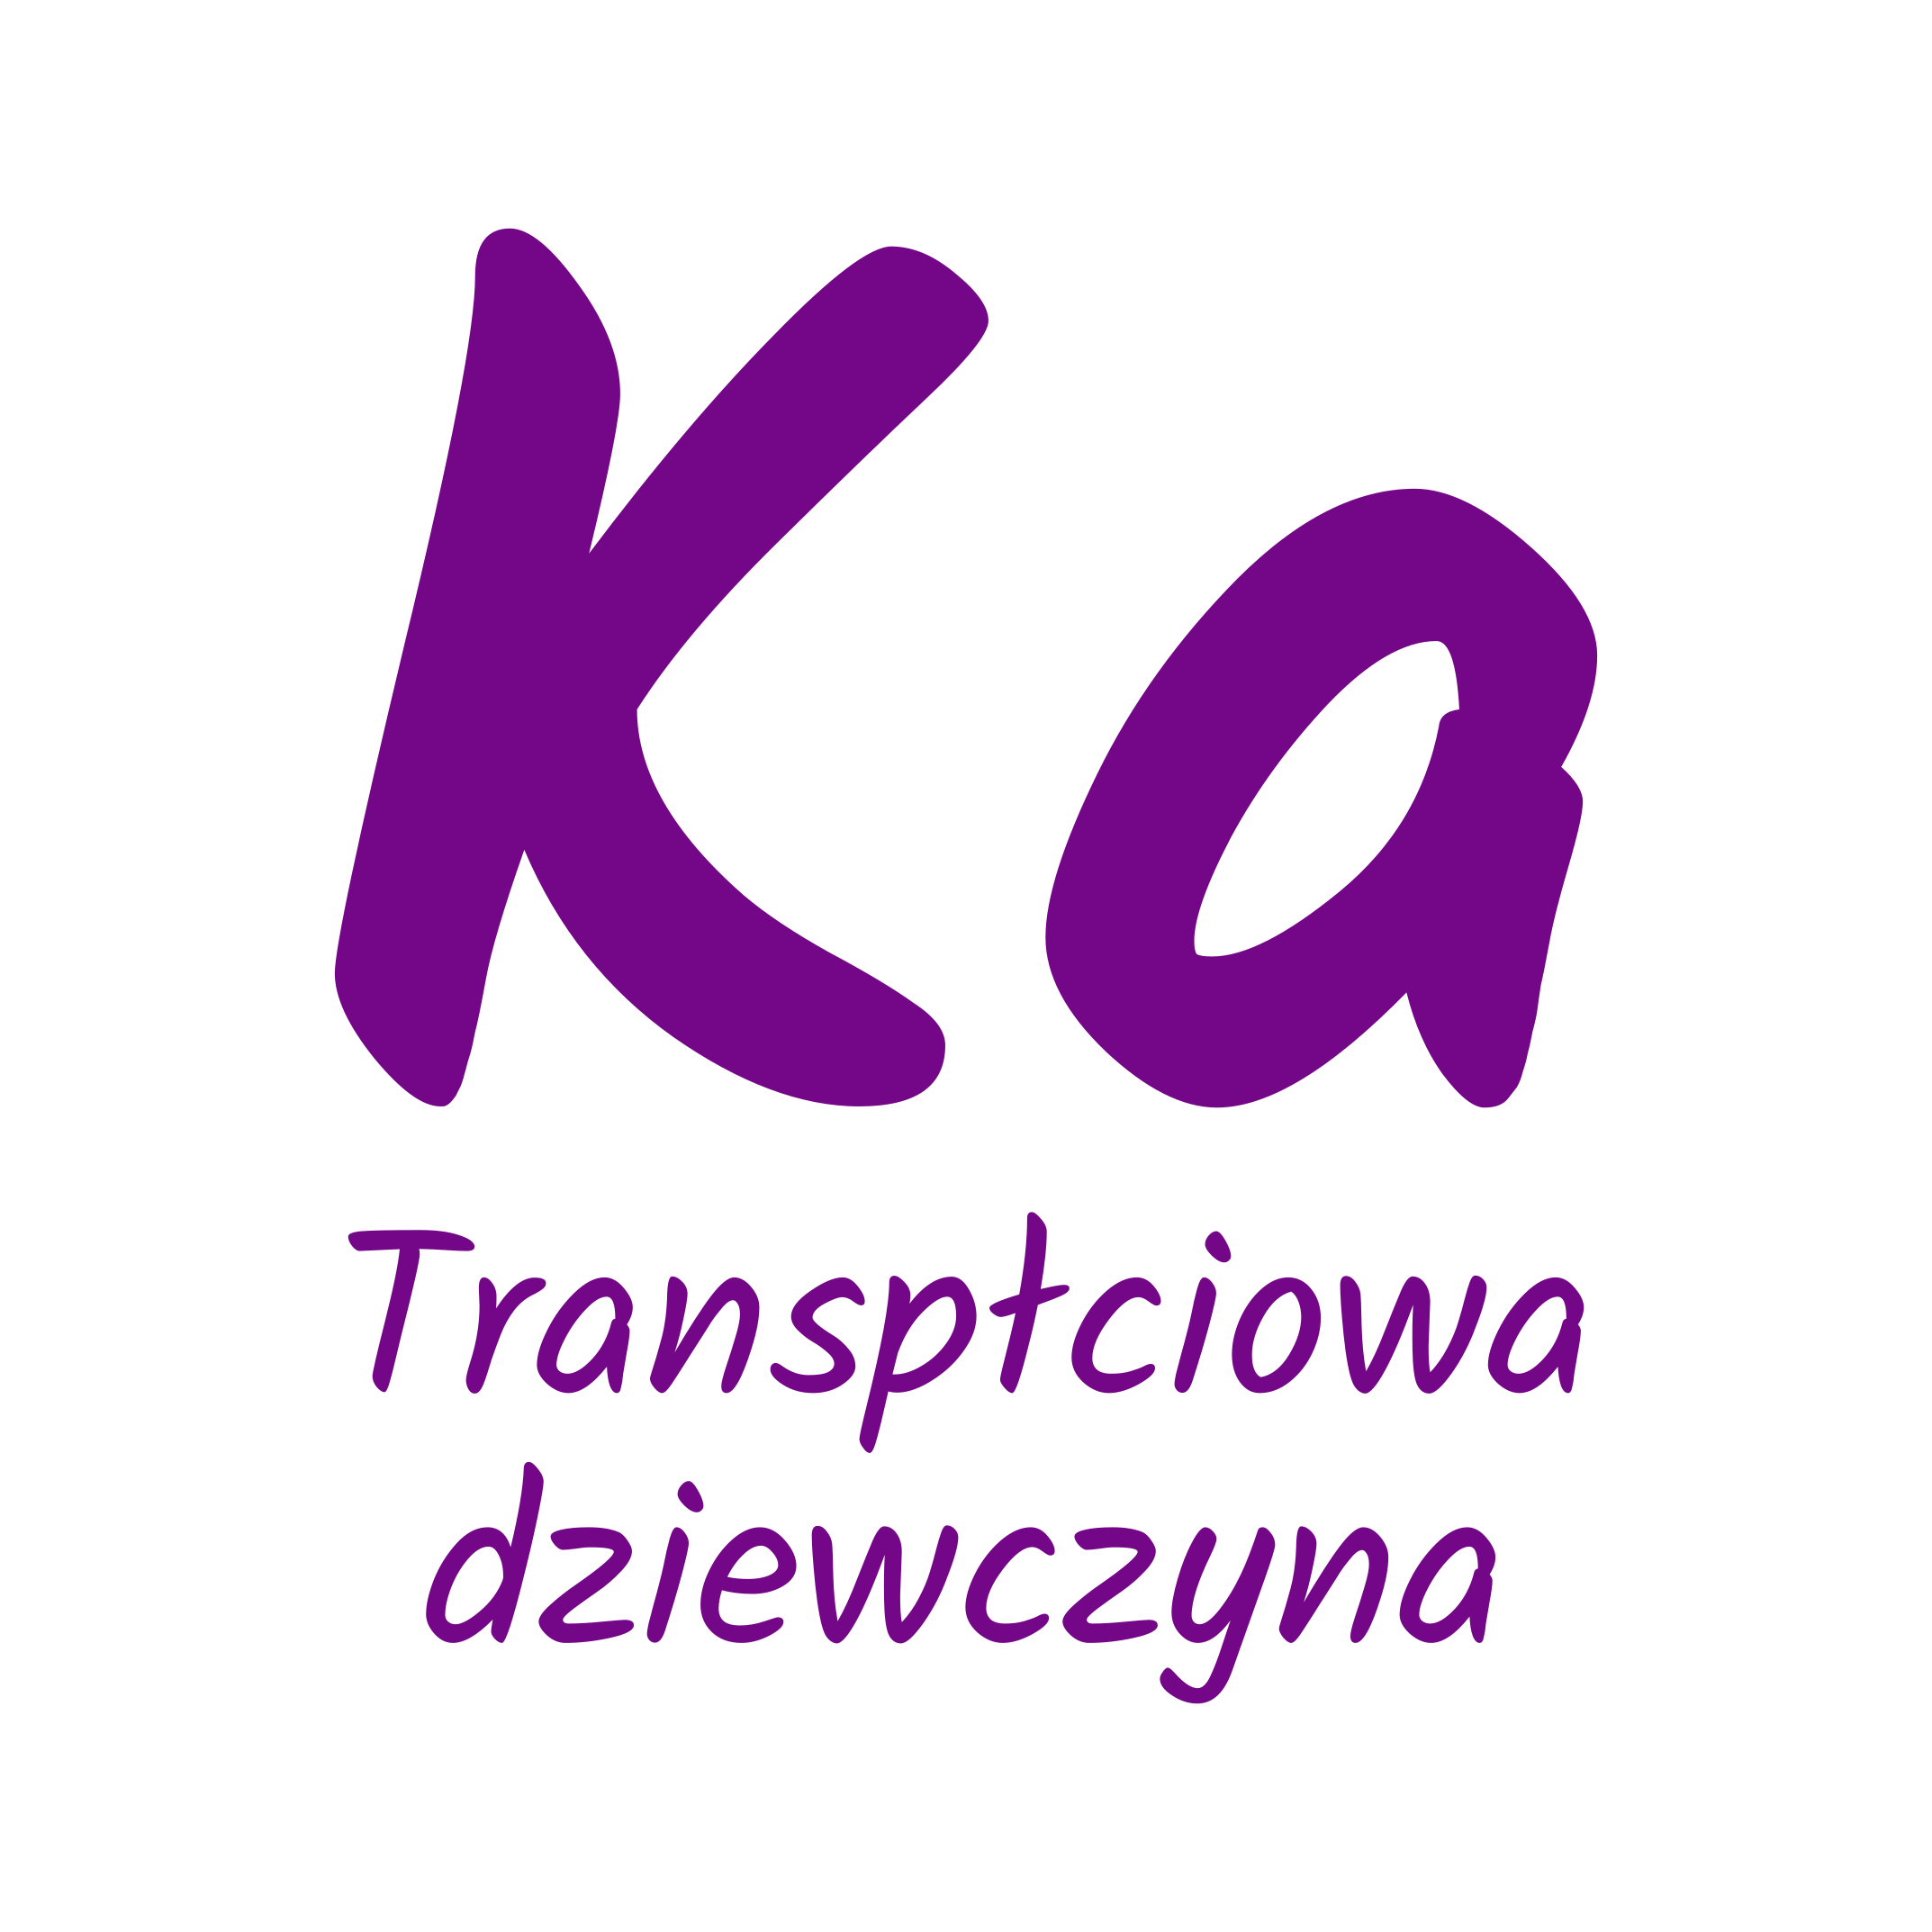 Logo Ka – Transpłciowa dziewczyna, wpisane w koło